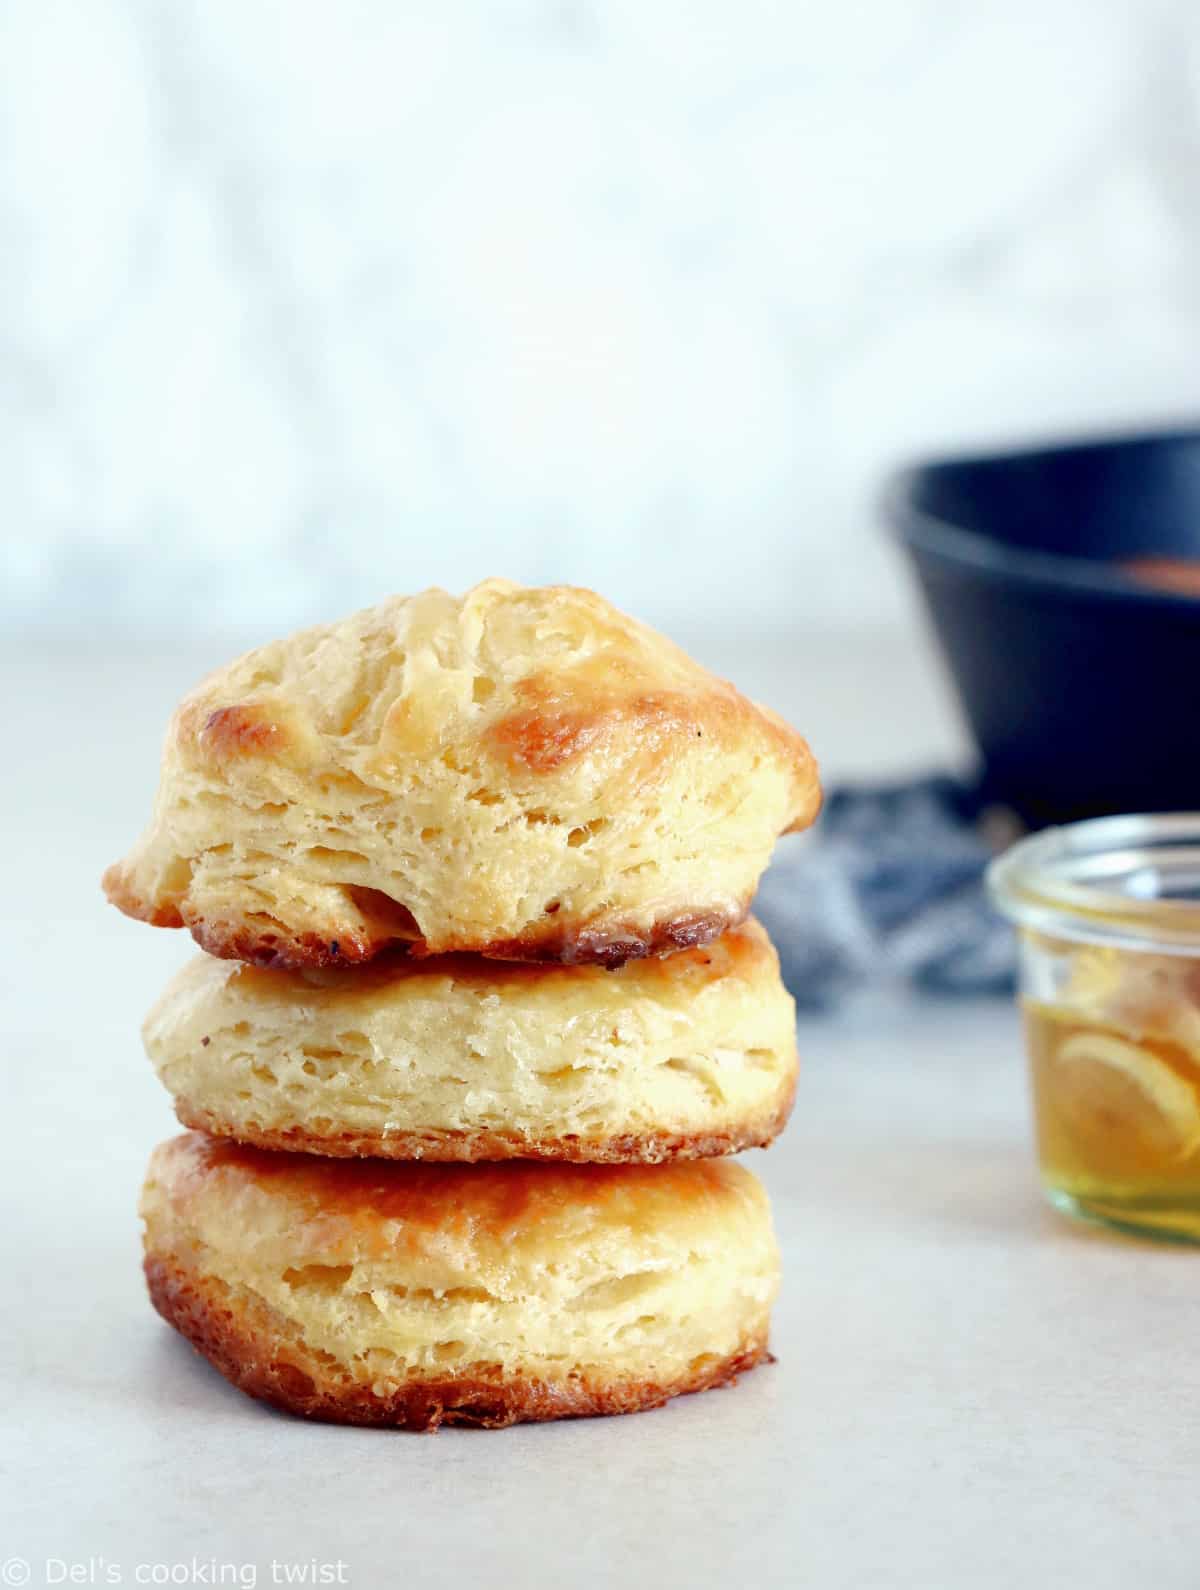 Les buttermilk biscuits (prononcer "biskits") sont une sorte de scones du sud des États-Unis aussi appelés "Southern biscuits".